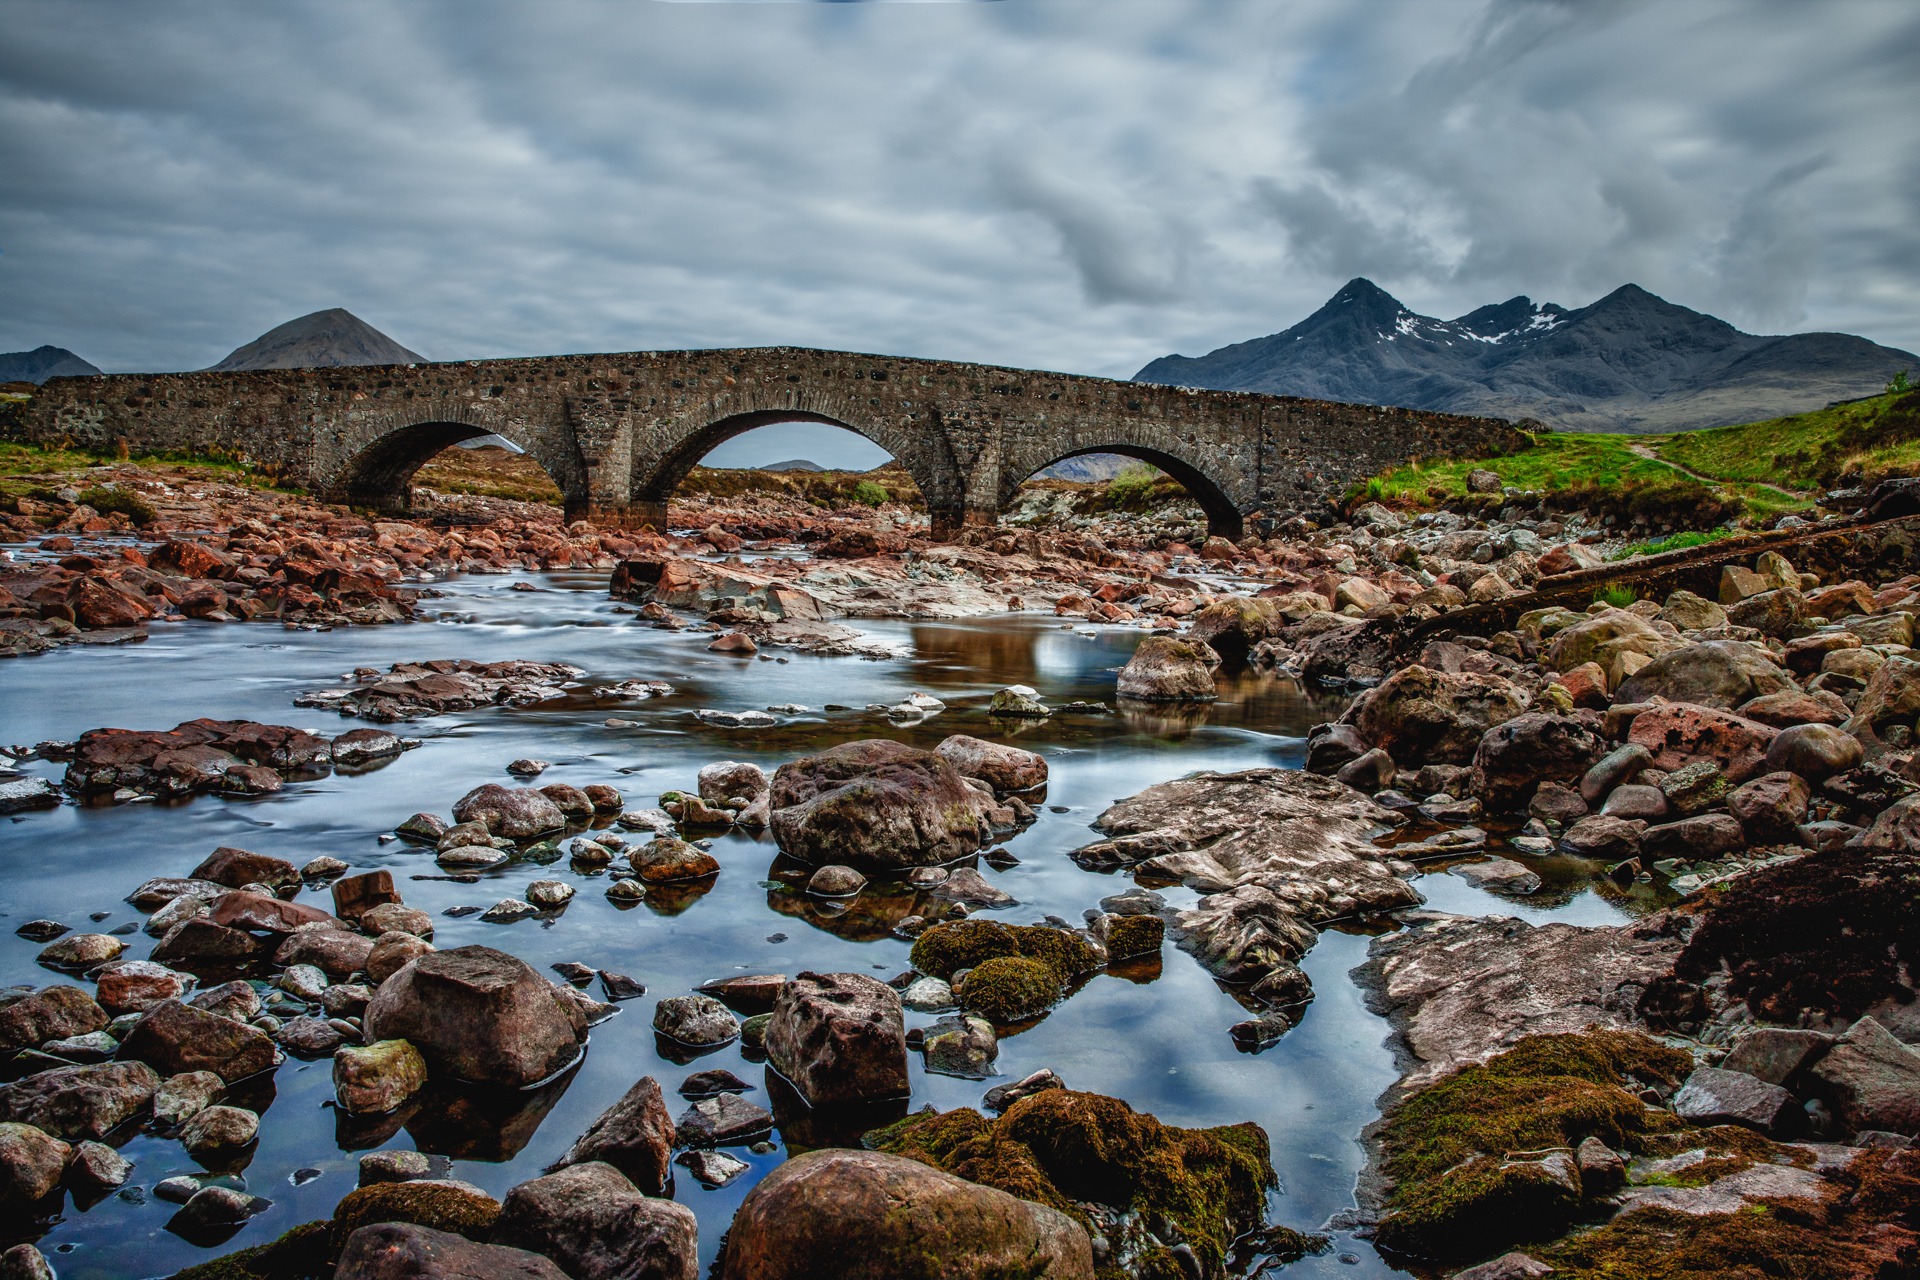 Stone arch bridge in Scotland